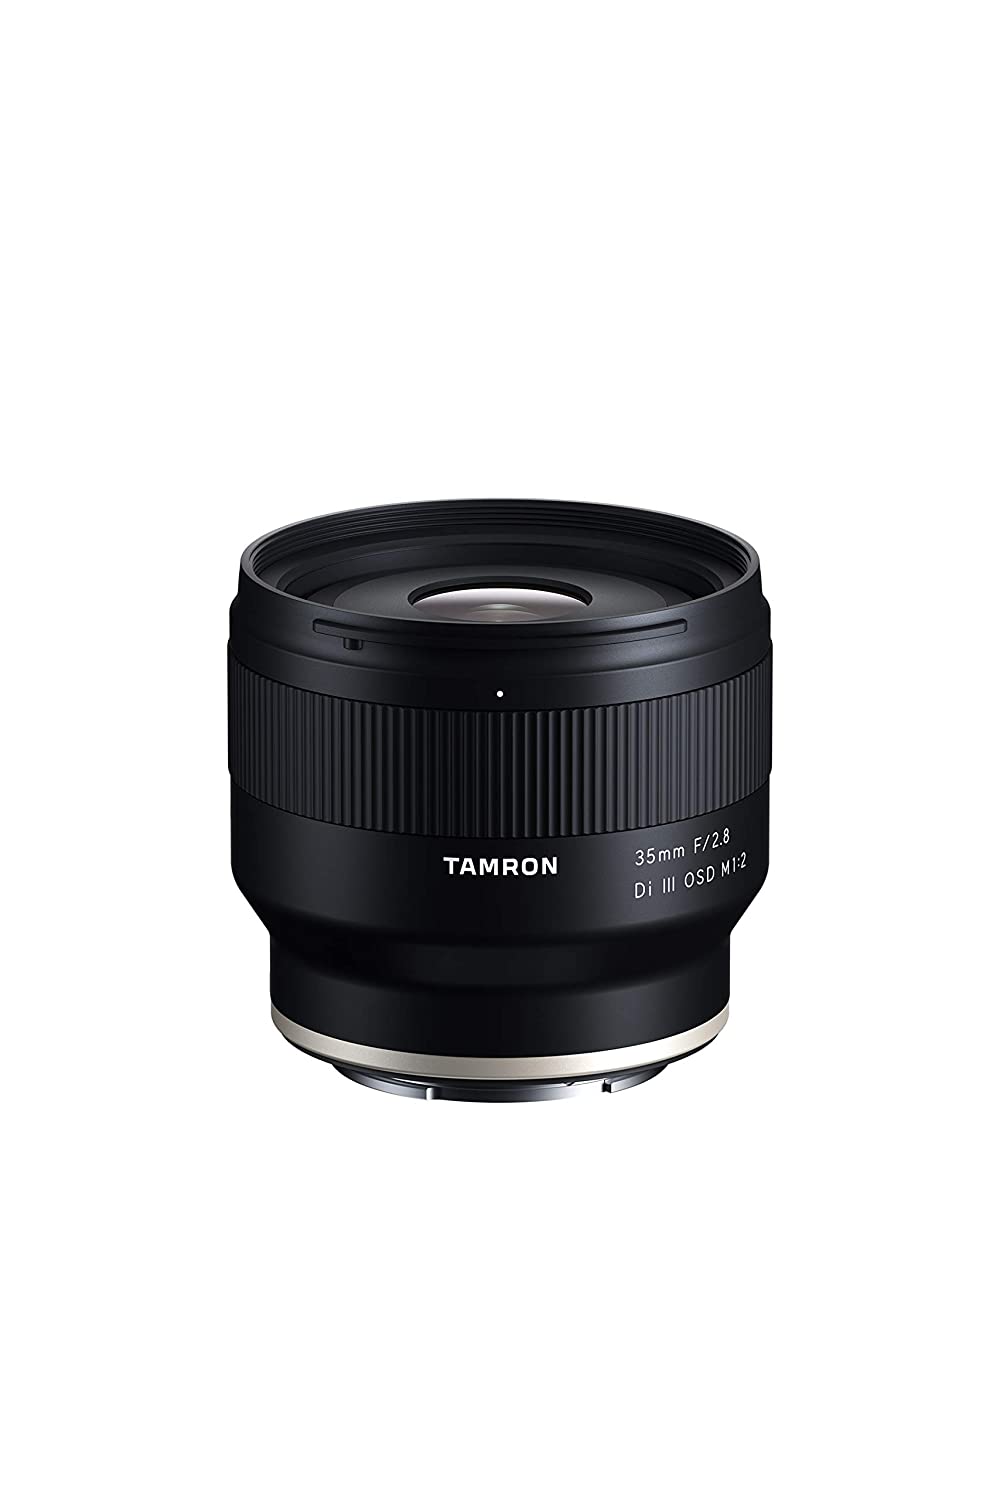 Detec™ Tamron F053 35mm f/2.8 Di III OSD M 1:2 Lens for Sony E-Mount Lens/Full-Frame Format